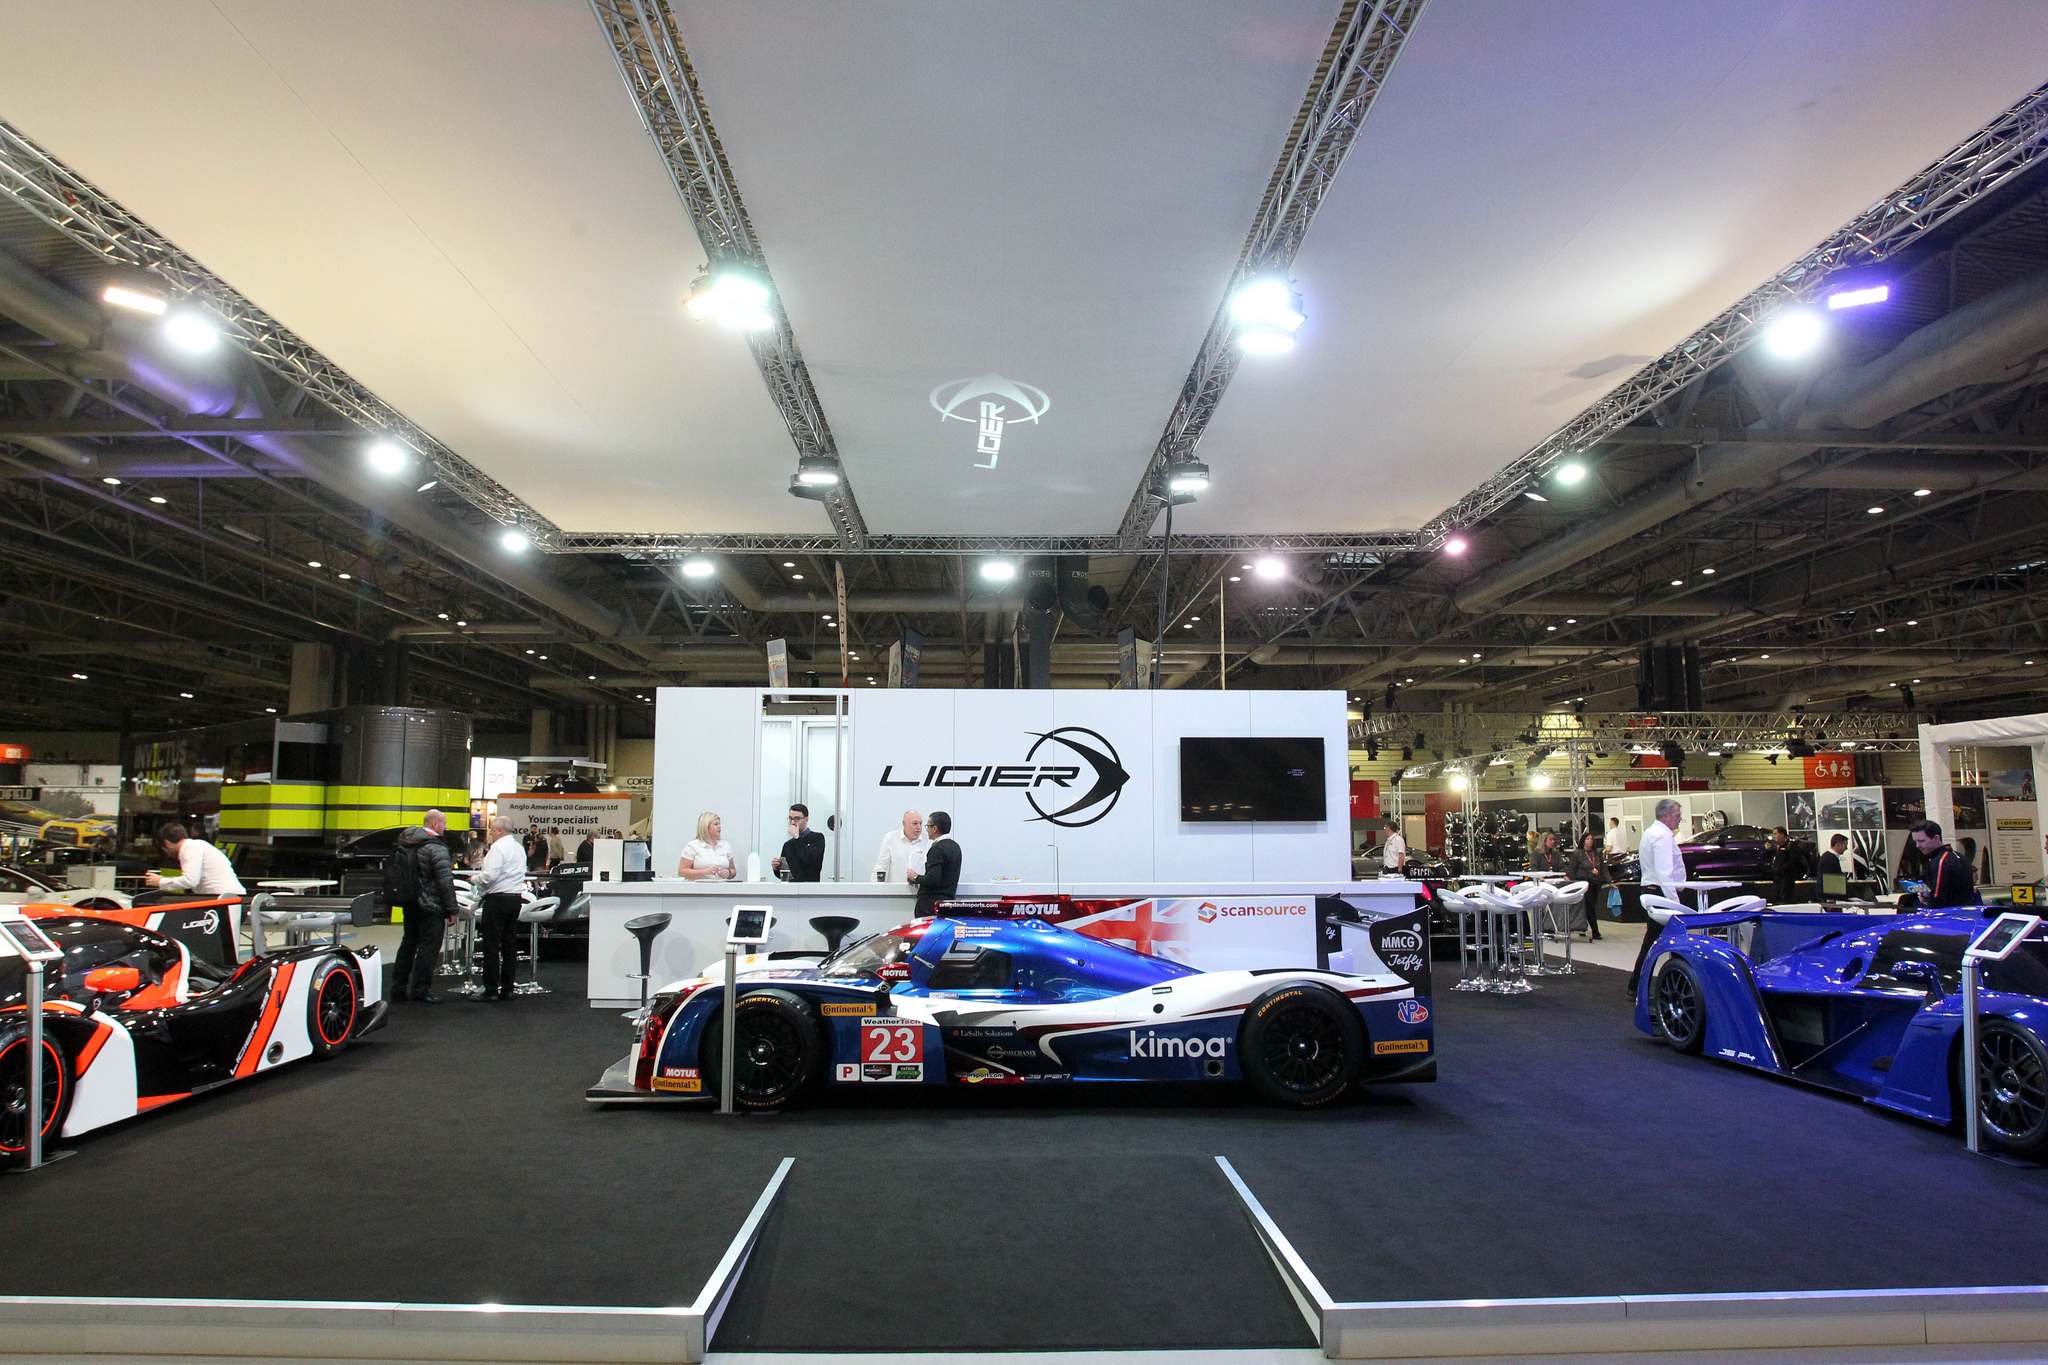 ligier 20182 Ligier at Autosport International Show 2018